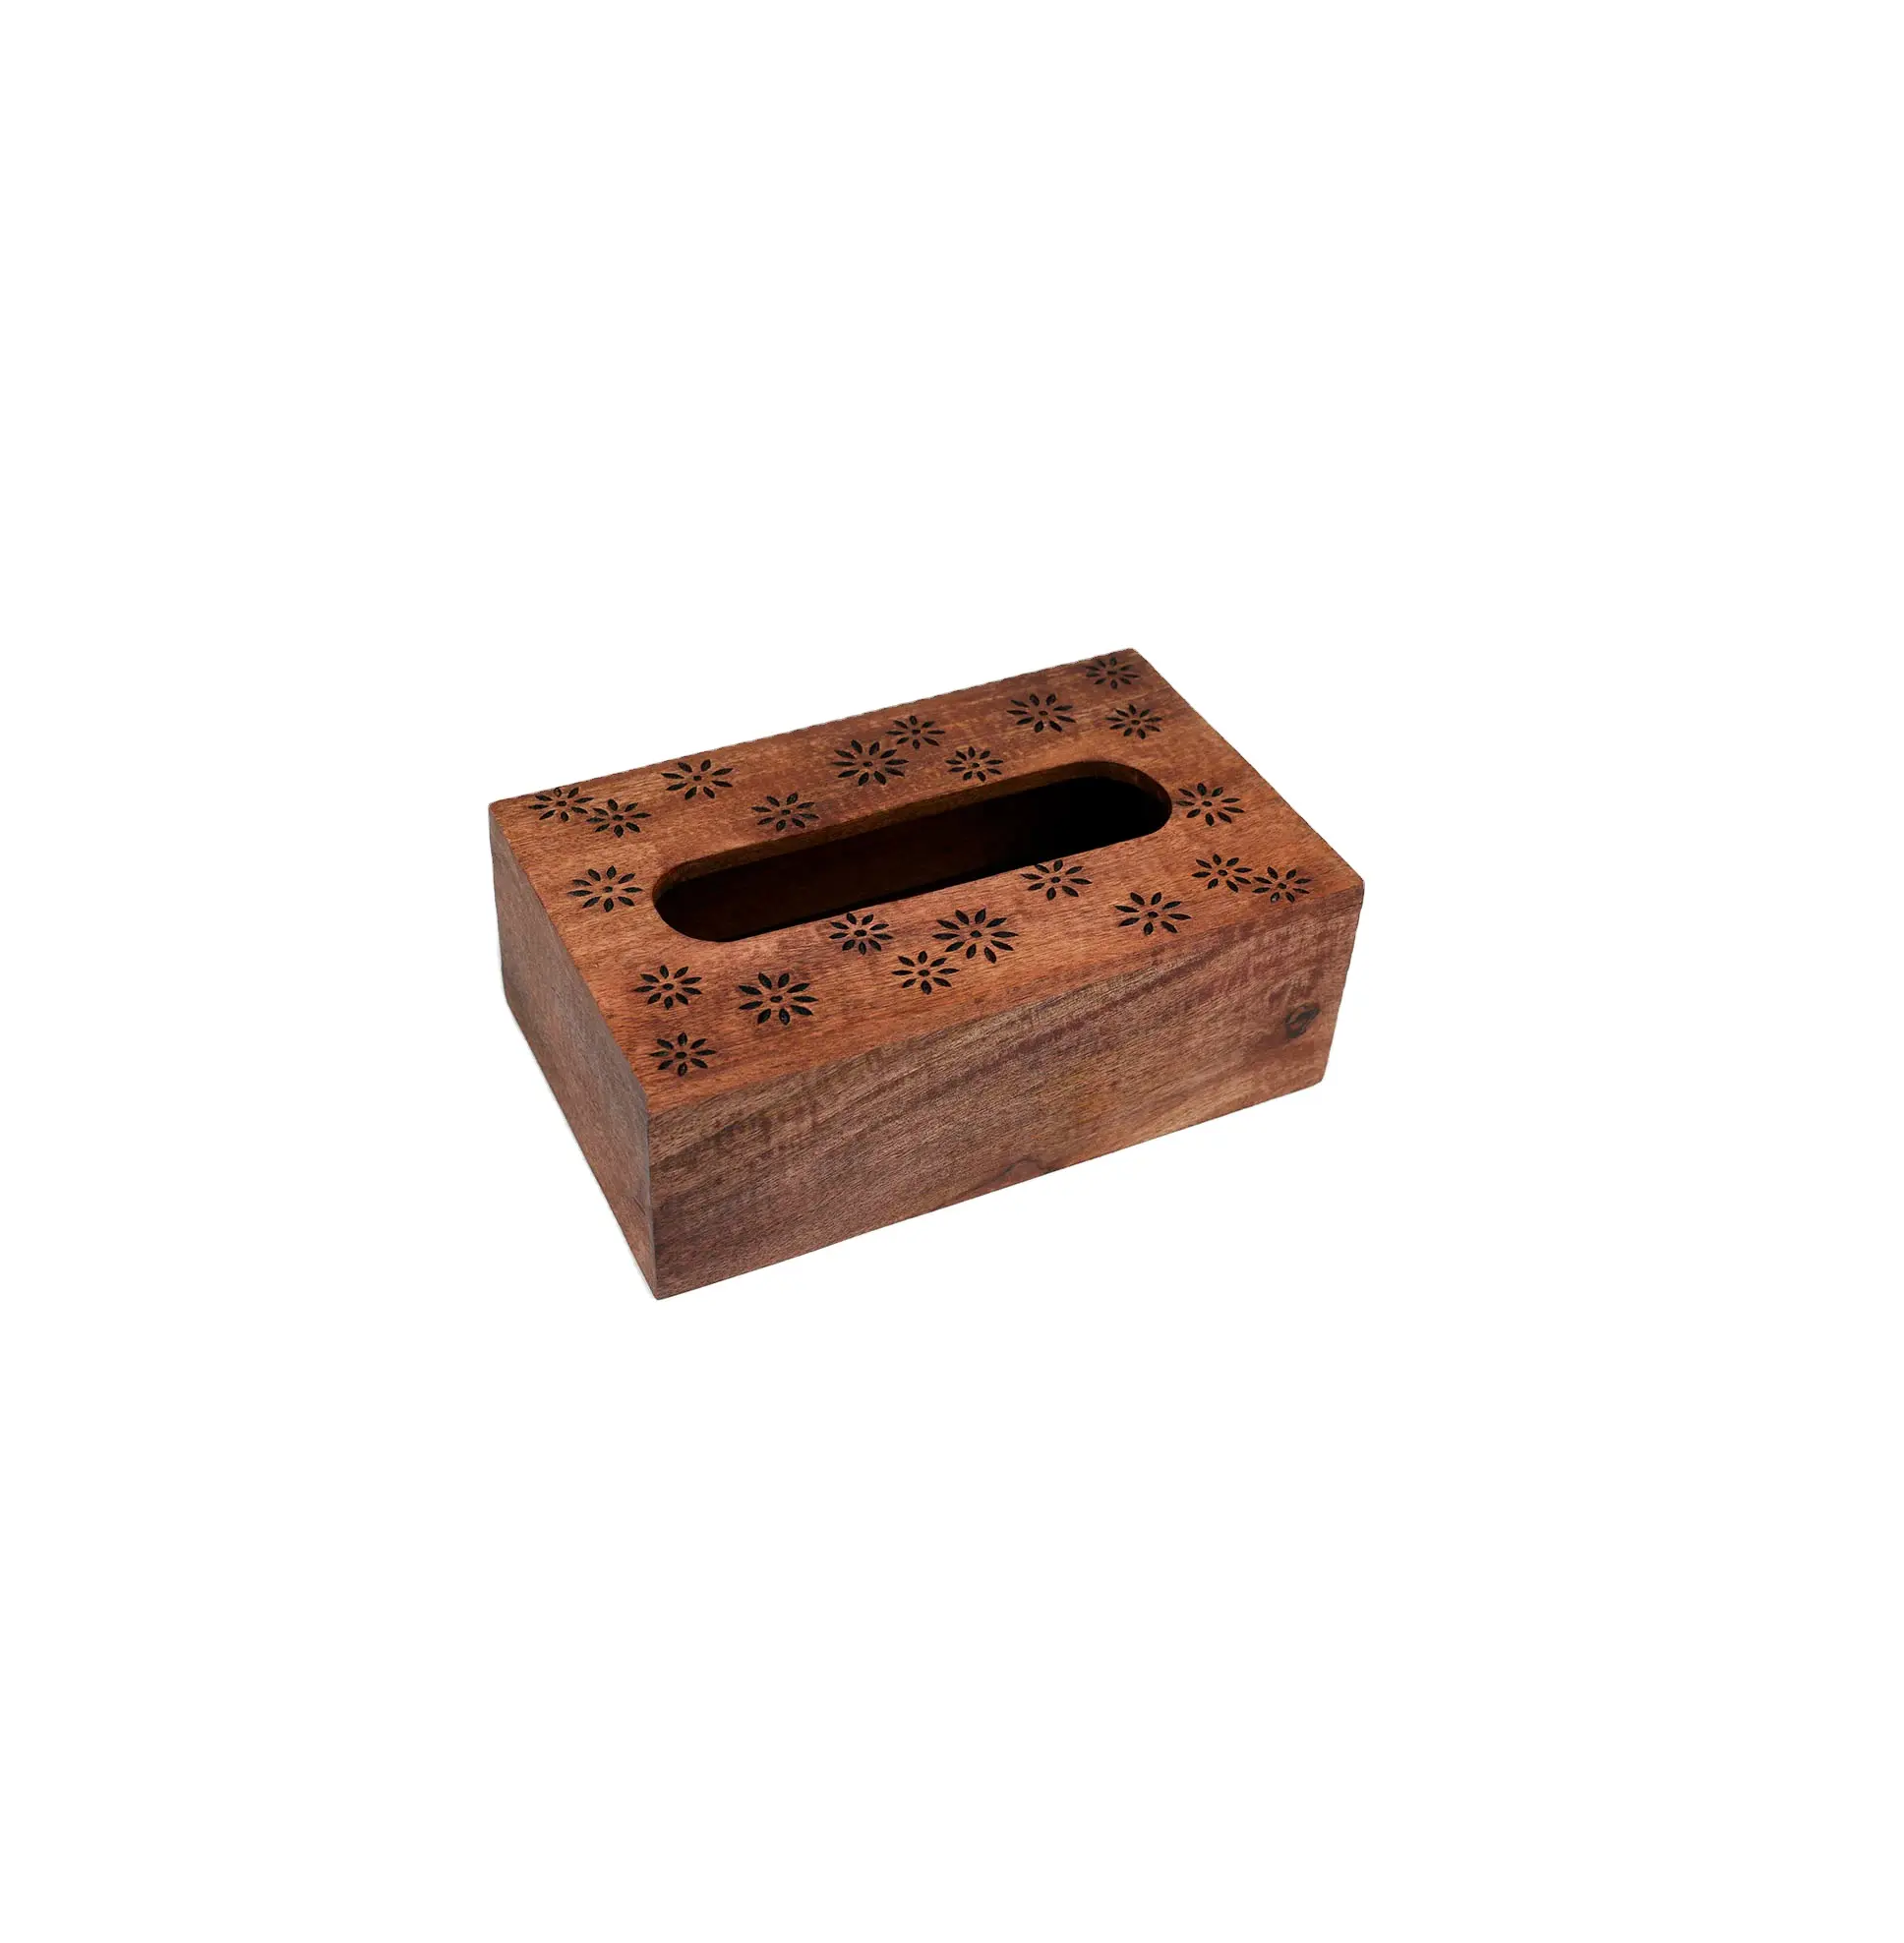 Kotak tisu kayu padat dengan biaya terendah wadah tisu bermotif kayu kotak tisu kertas tebal dengan kualitas primum & harga terbaik